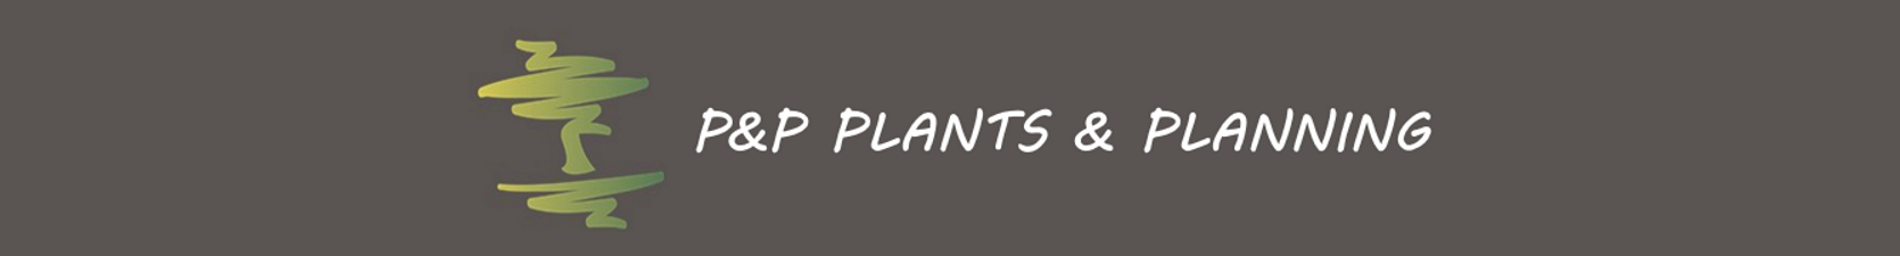 Plants & Planning